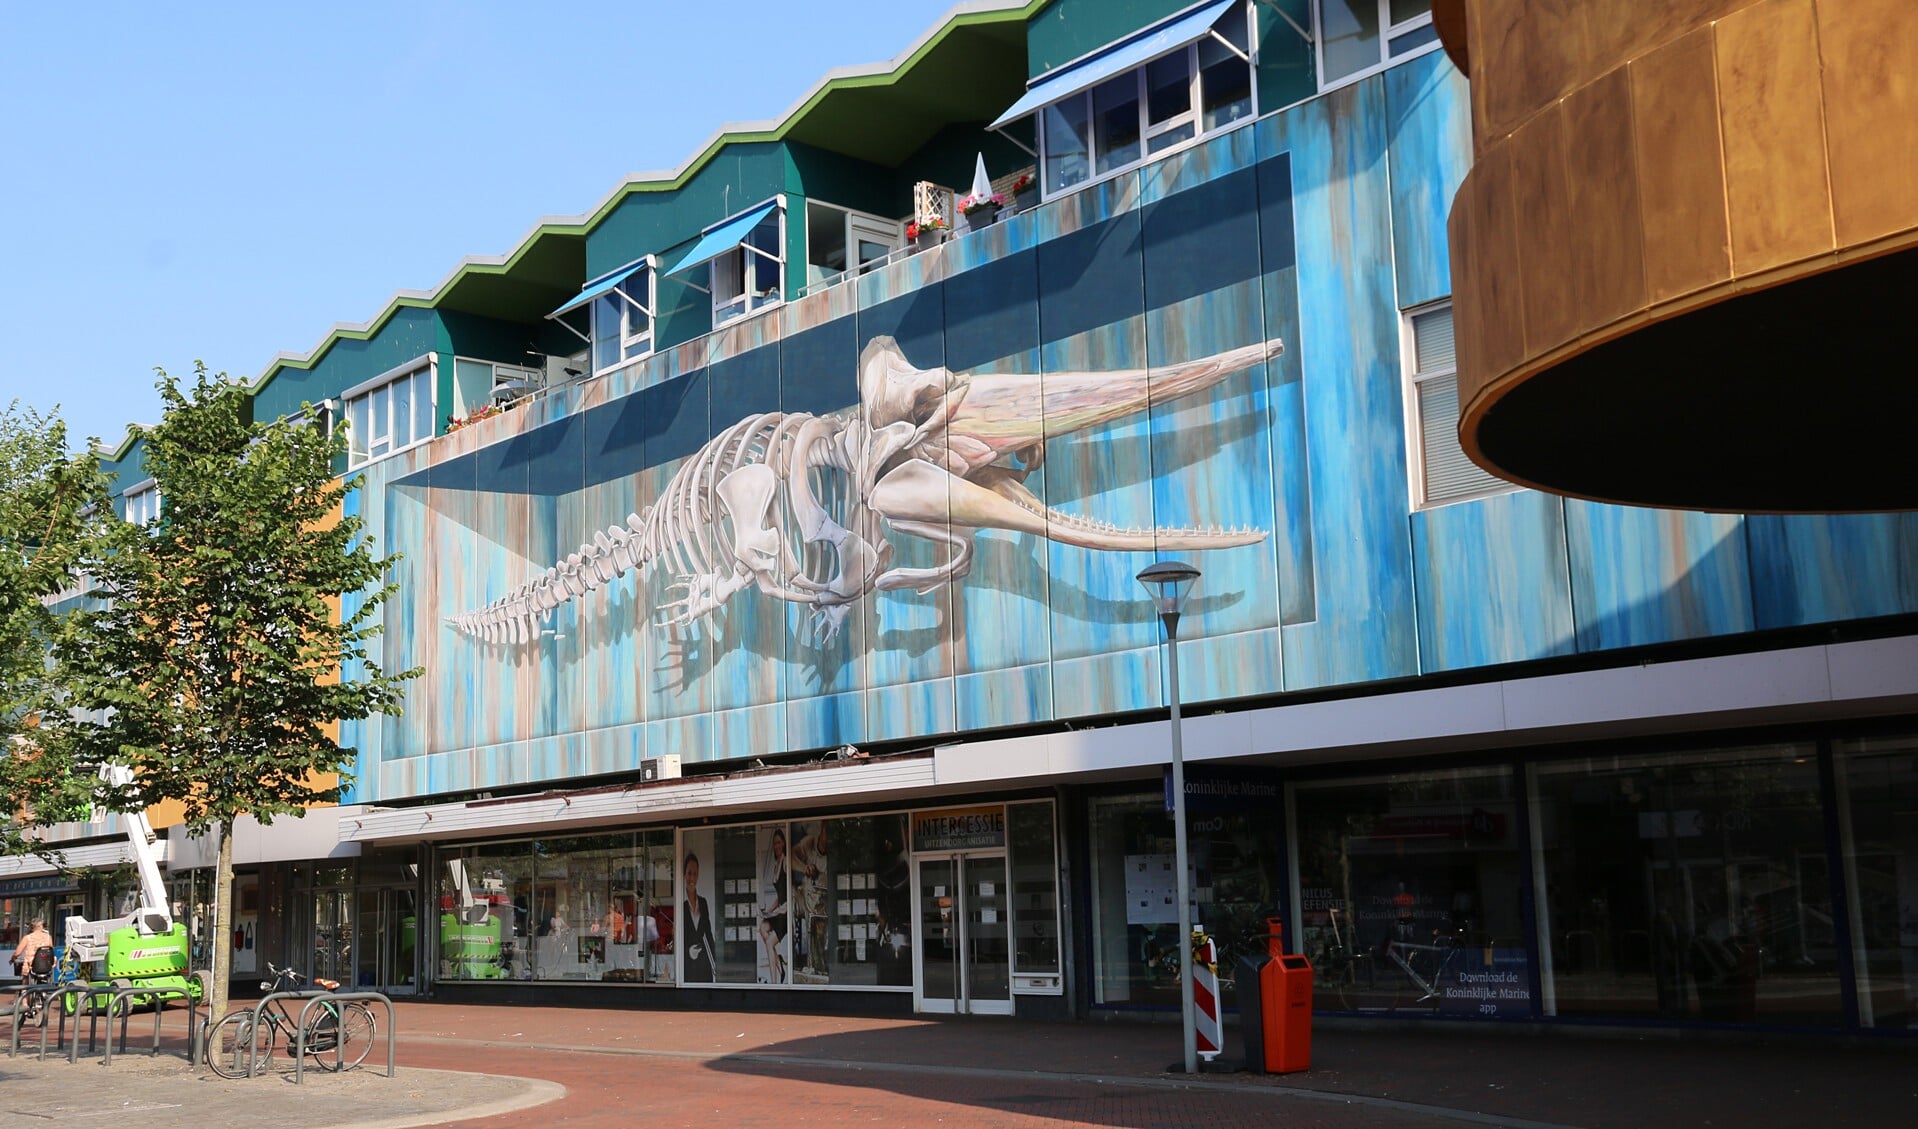 Met Chris de Potvis heeft Den Helder de grootste 3D mural van Nederland. (Foto: Leon Keer)